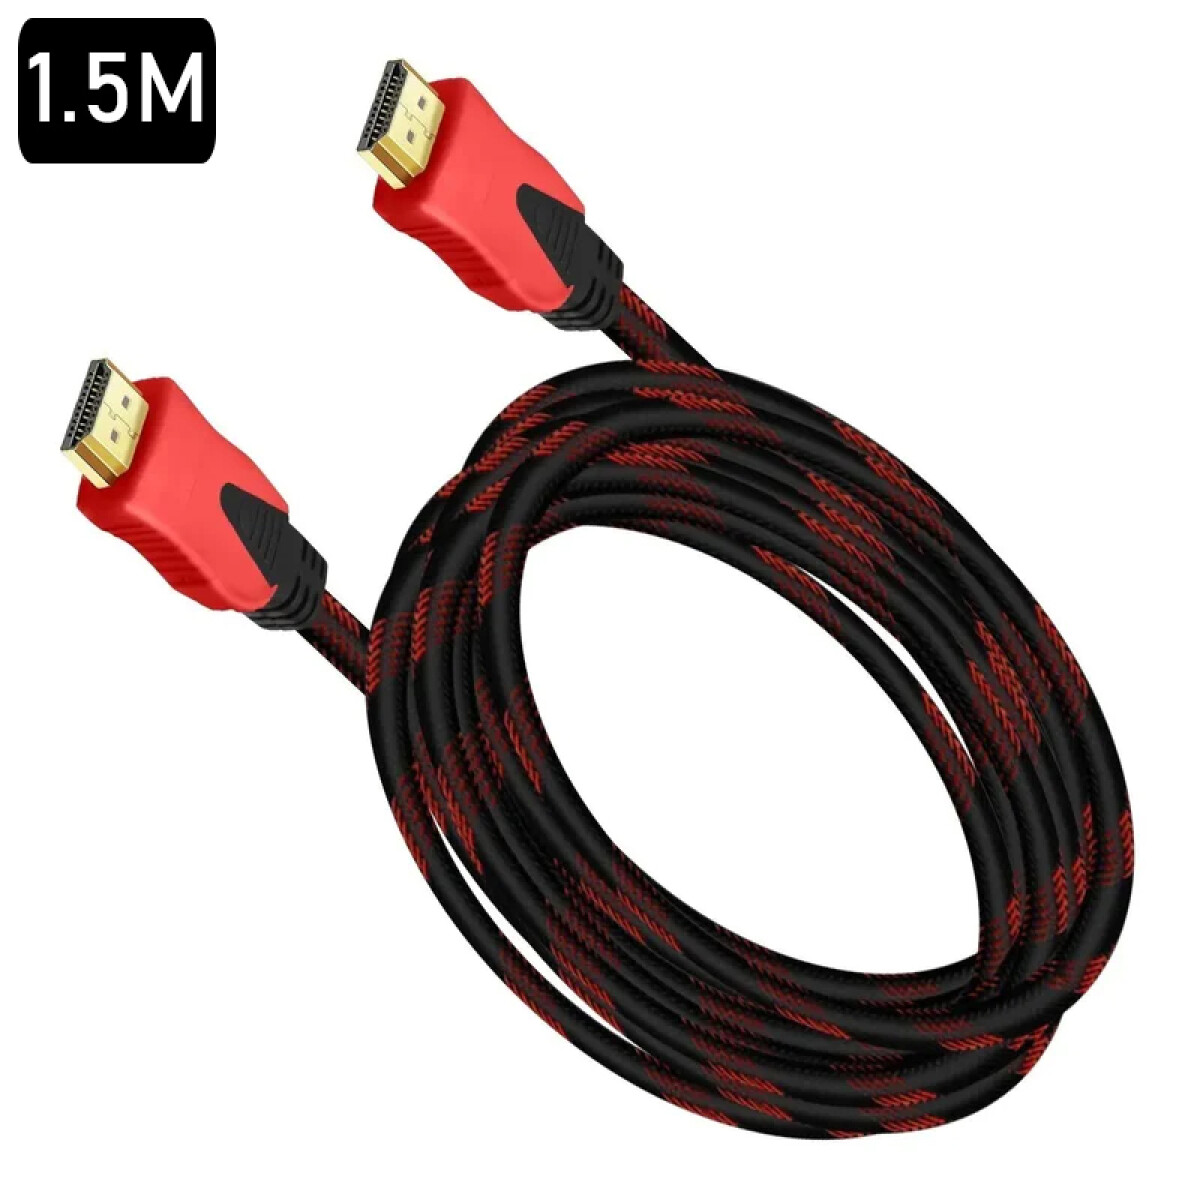 Cable HDMI 1.5M - Unica 